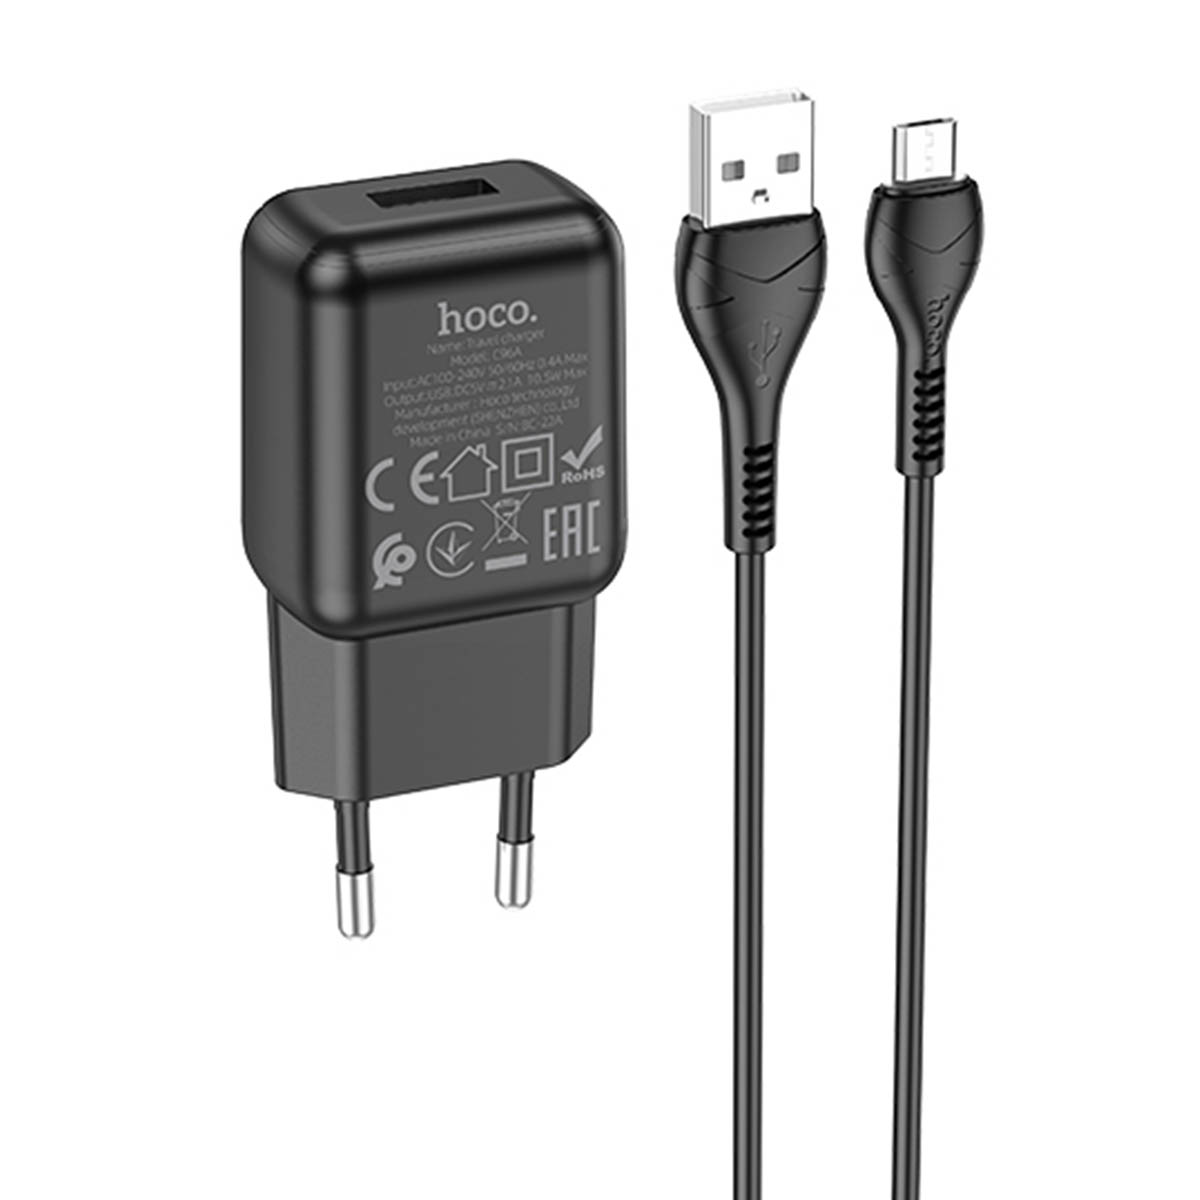 СЗУ (сетевое зарядное устройство) HOCO C96A, адаптер 1 USB 5V-2.1A, кабель micro USB, цвет черный